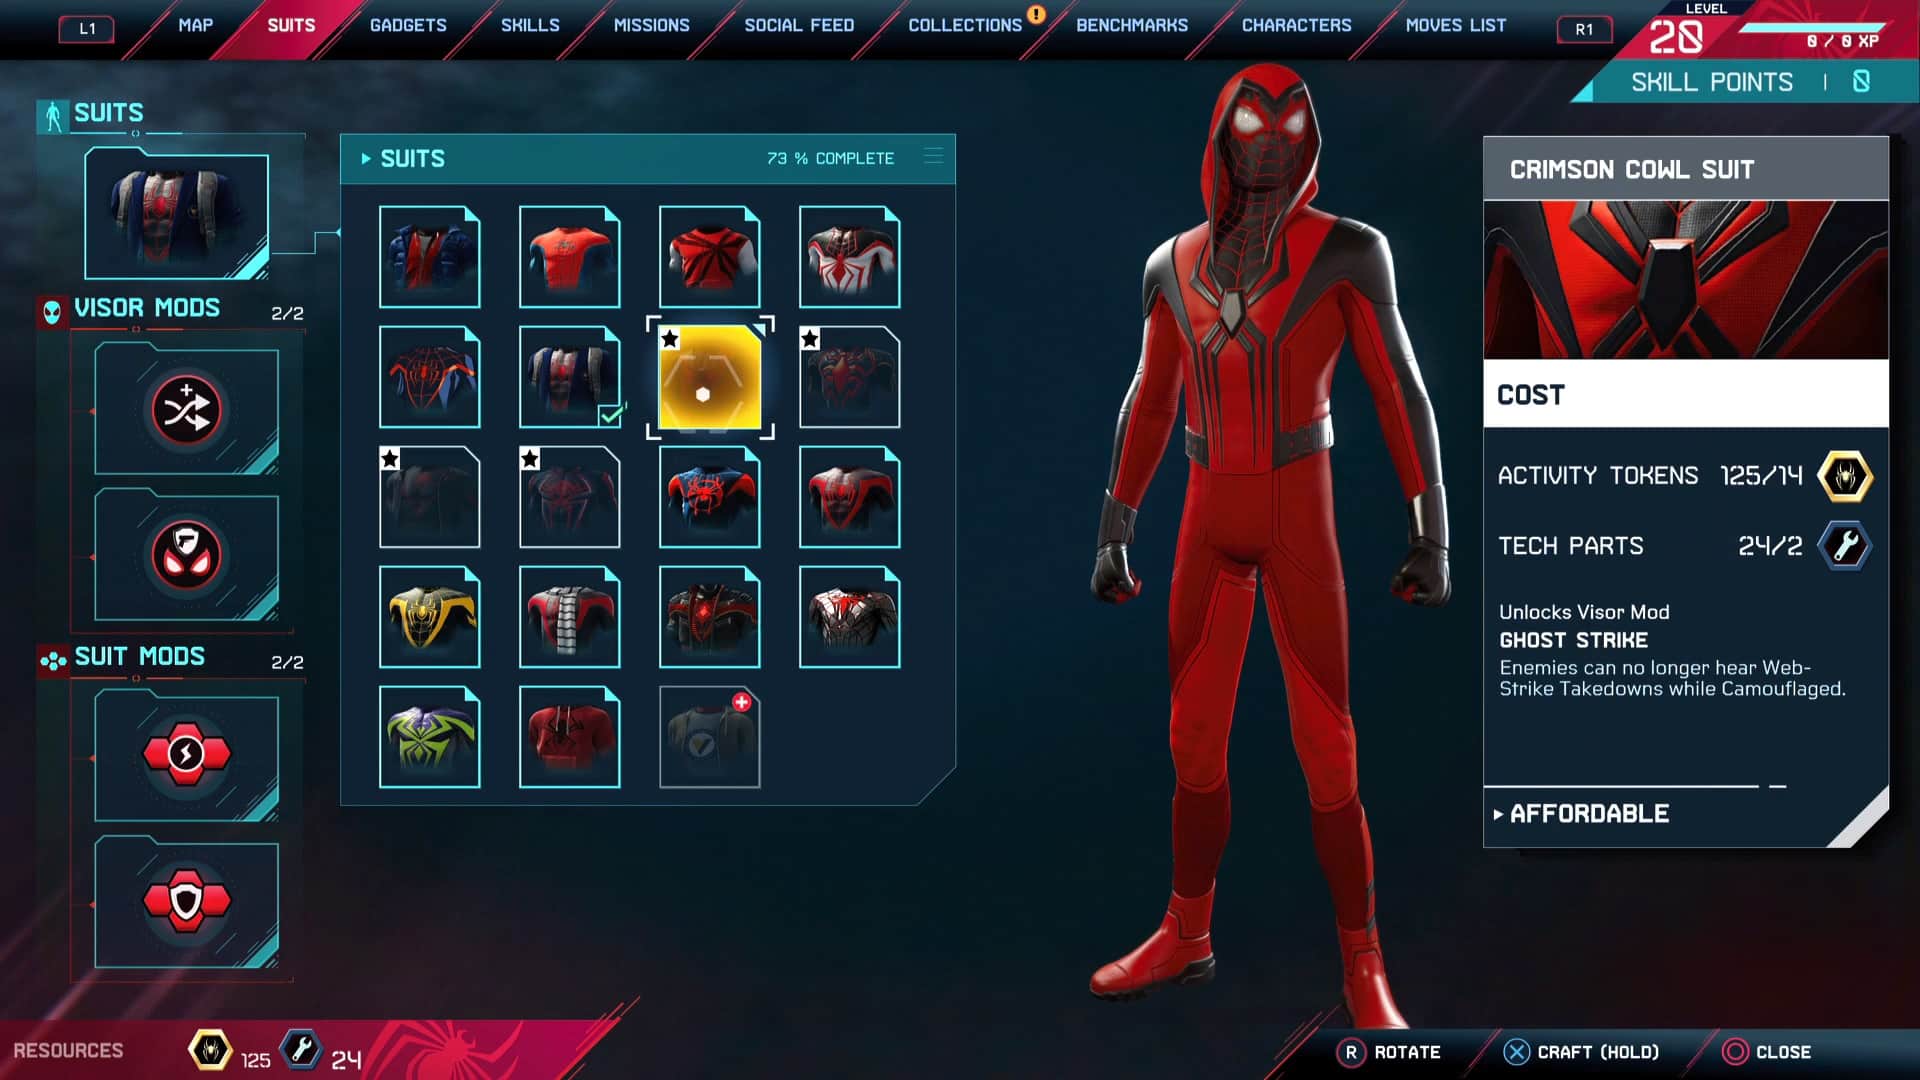 spider-man miles morales Crimson Cowl costume